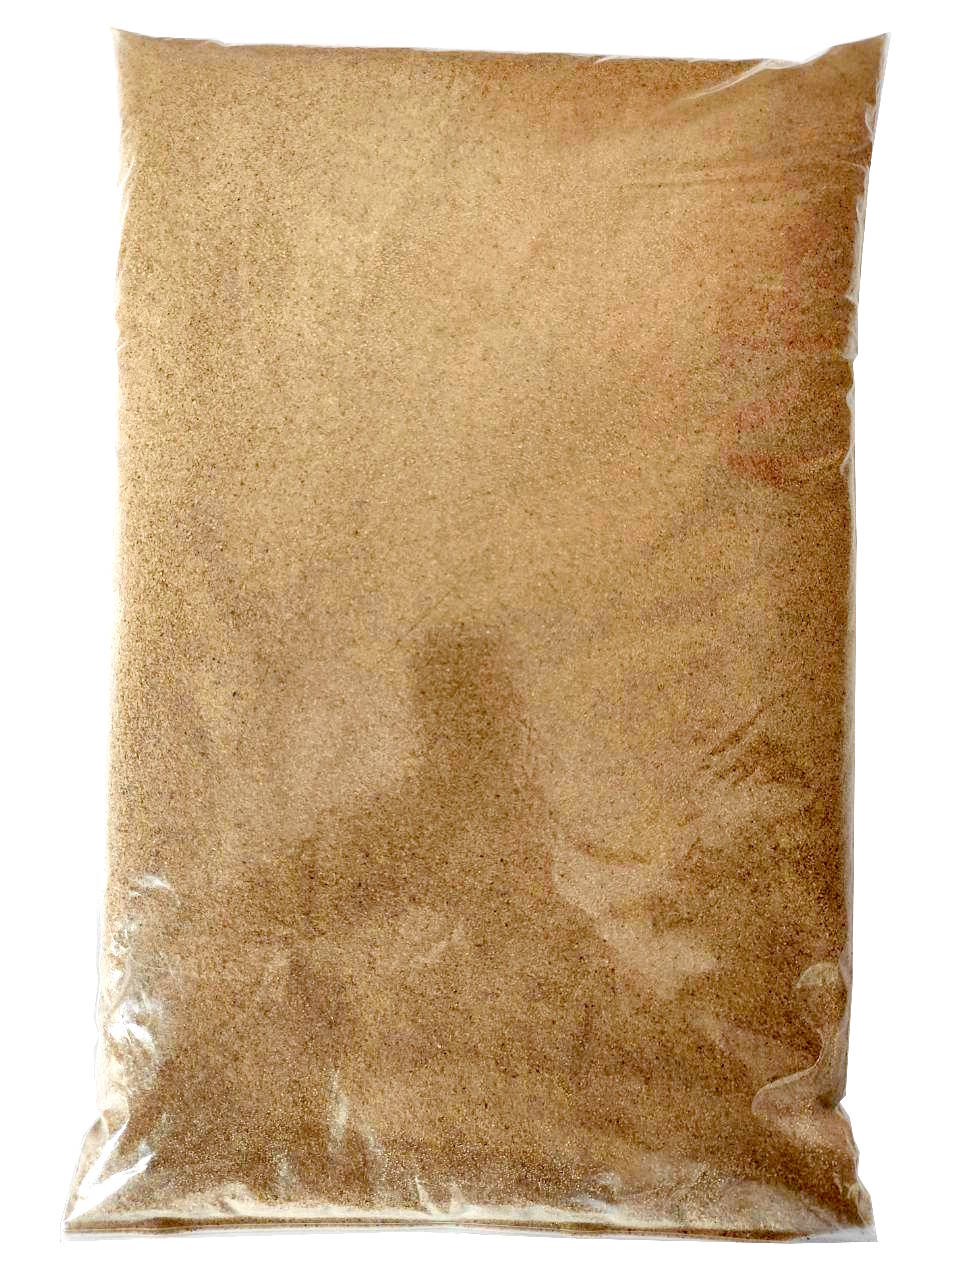 кварцевый песок для флорариума желто-коричневый, производитель Евроминерал Украина фракция 0,1-0,4 мм